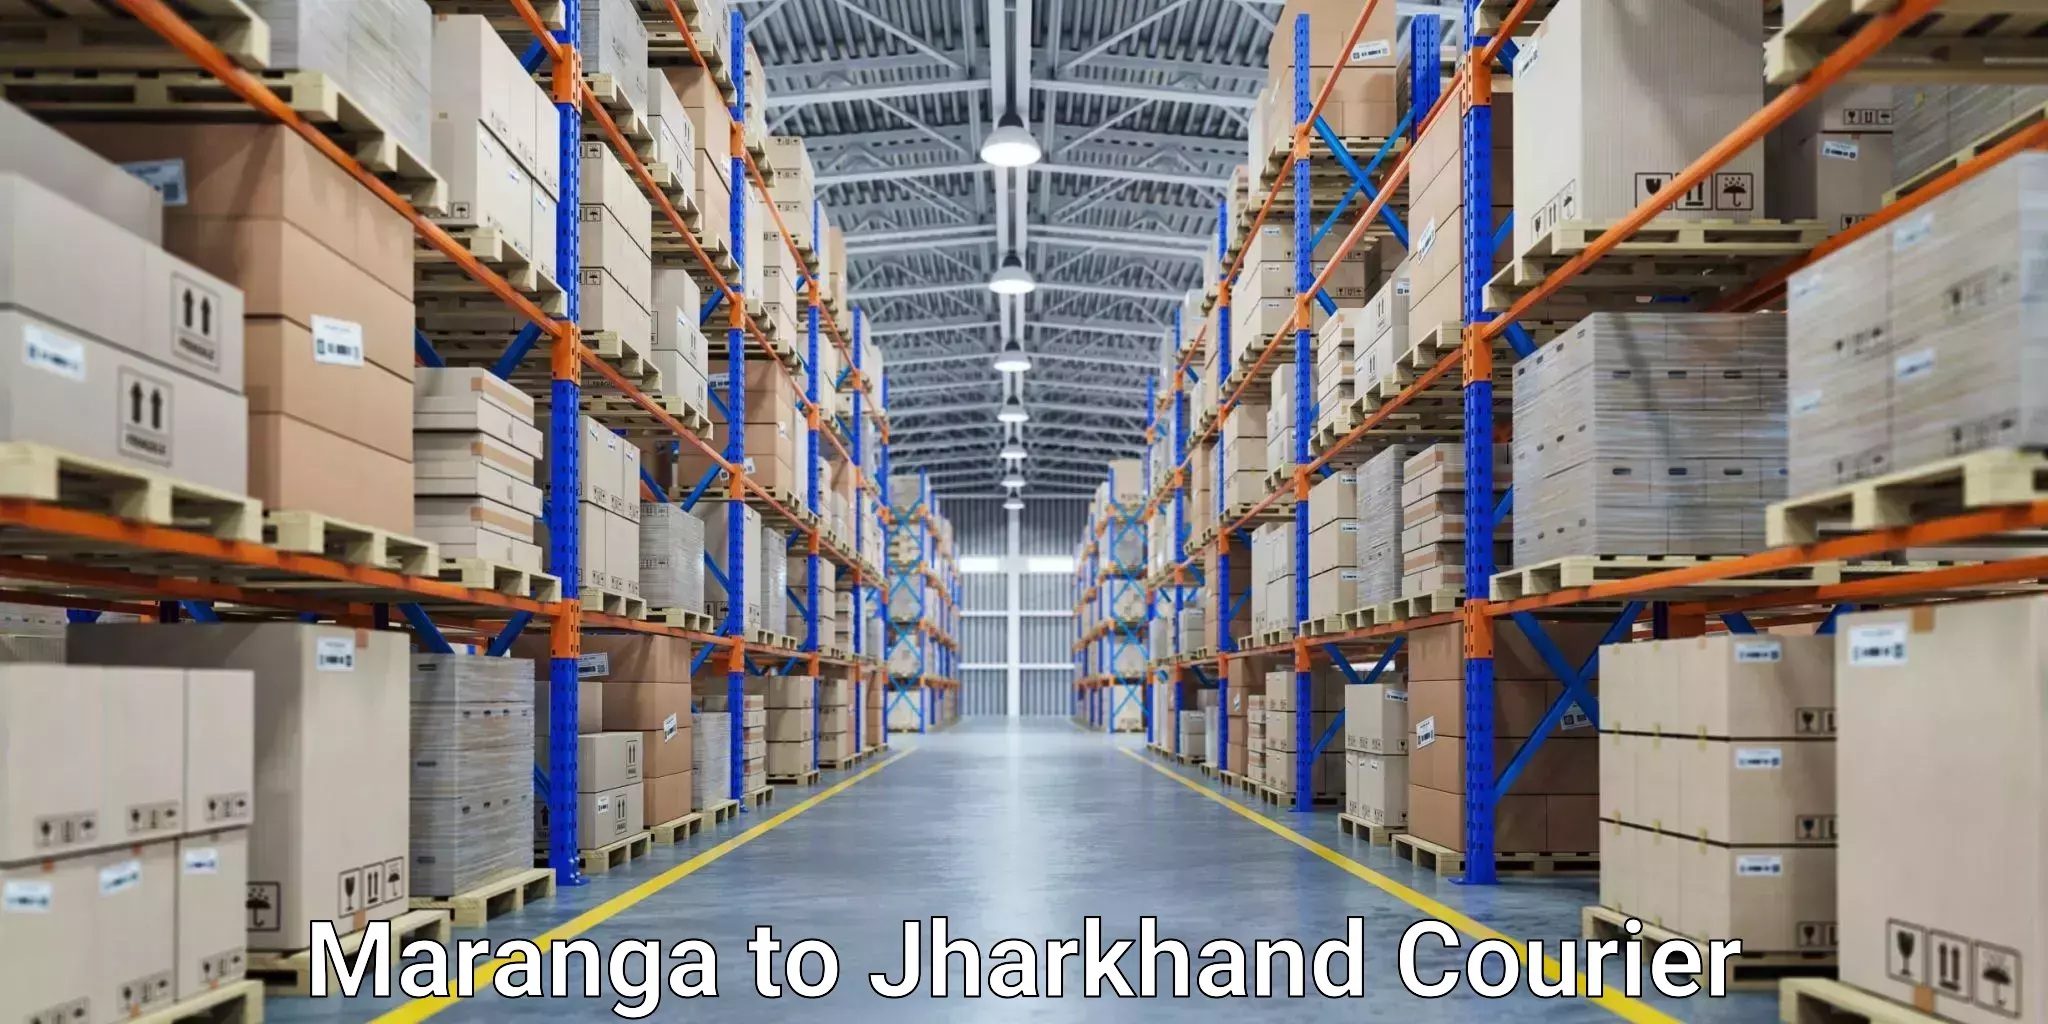 Comprehensive shipping network Maranga to Rangalia